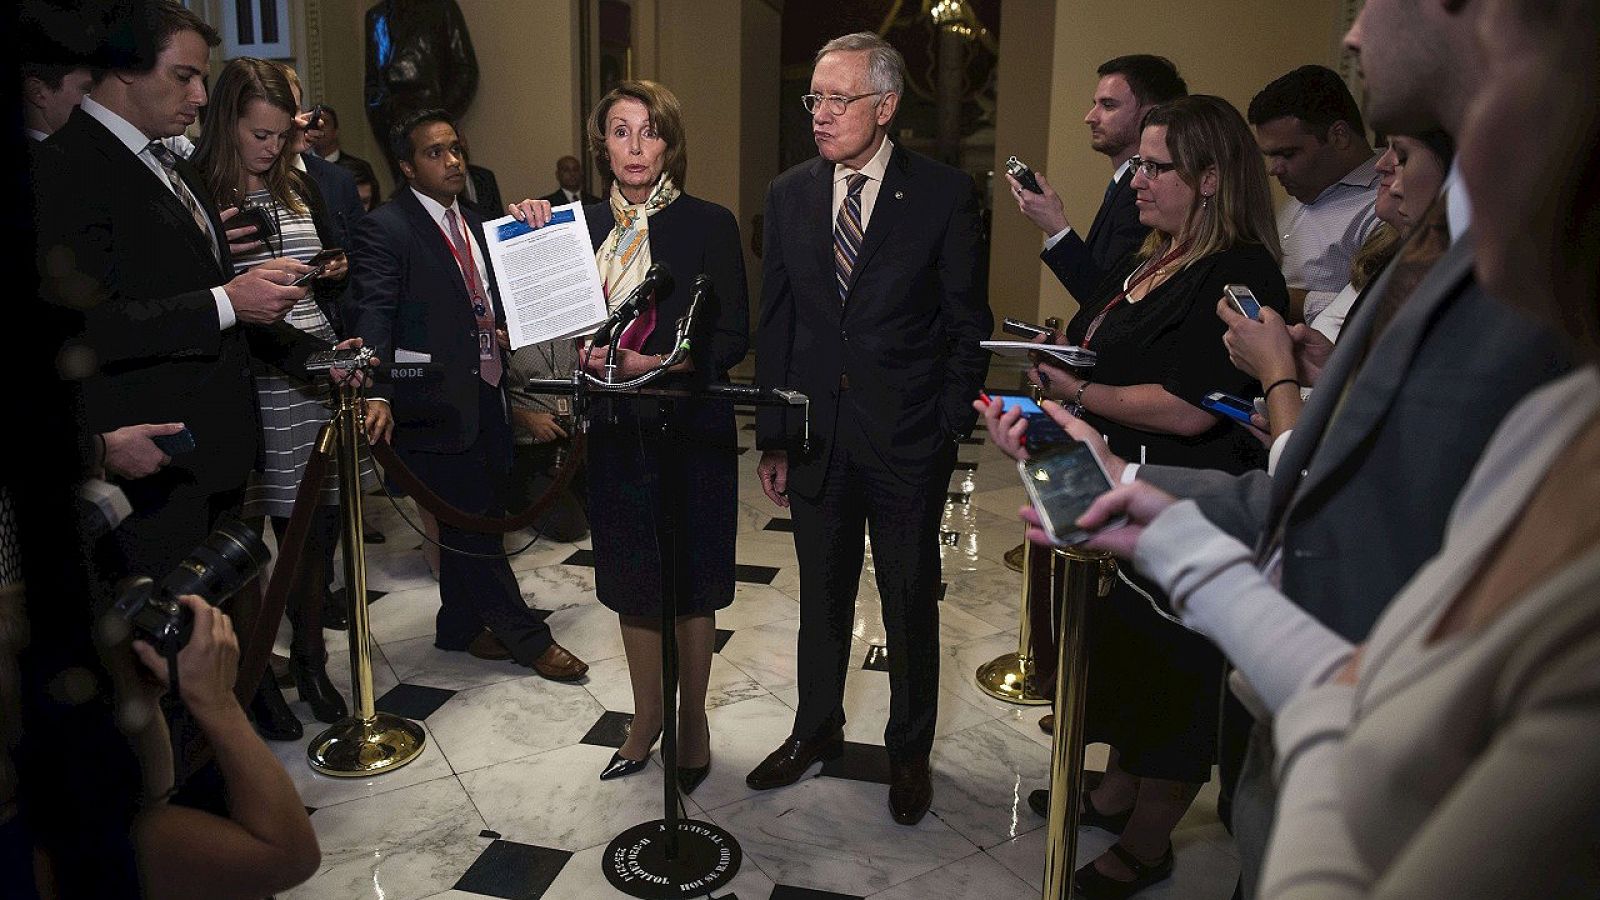 La líder de la minoría demócrata en la Cámara de Representantes de EE.UU., Nancy Pelosi, y el líder de la minoría demócrata en el Senado, Harry Reid, hablan con la prensa sobre el acuerdo de presupuestos para los próximos dos años